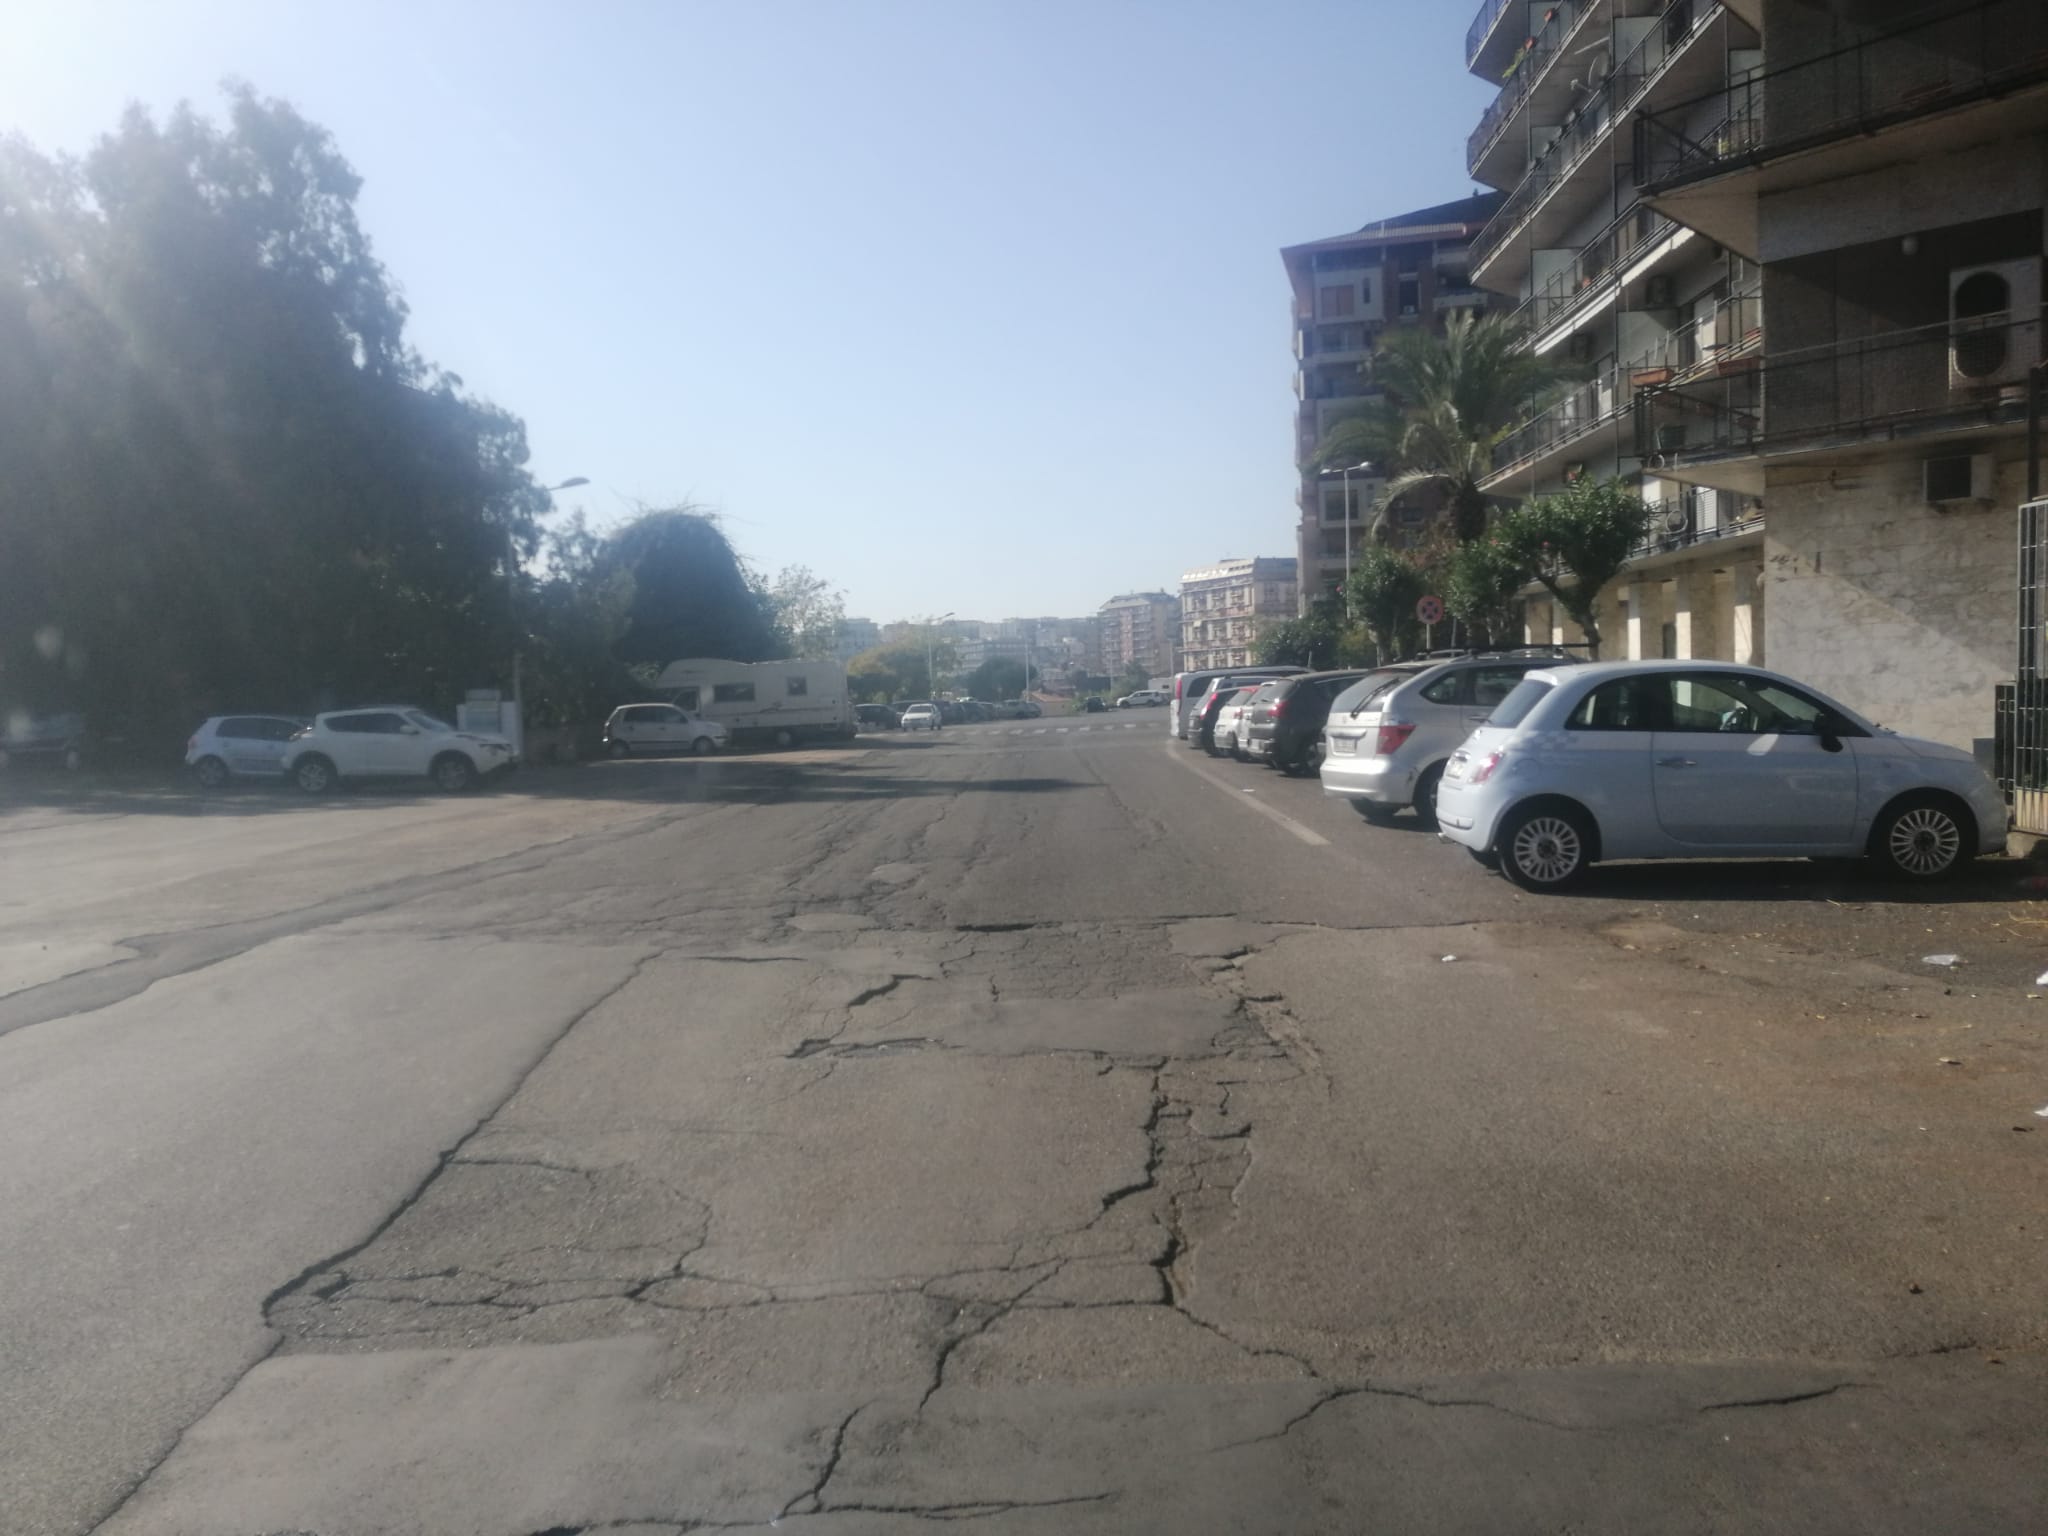 Catania, problemi strutturali e di mobilità in via De Gasperi. Cardello: “Una zona completamente abbandonata”